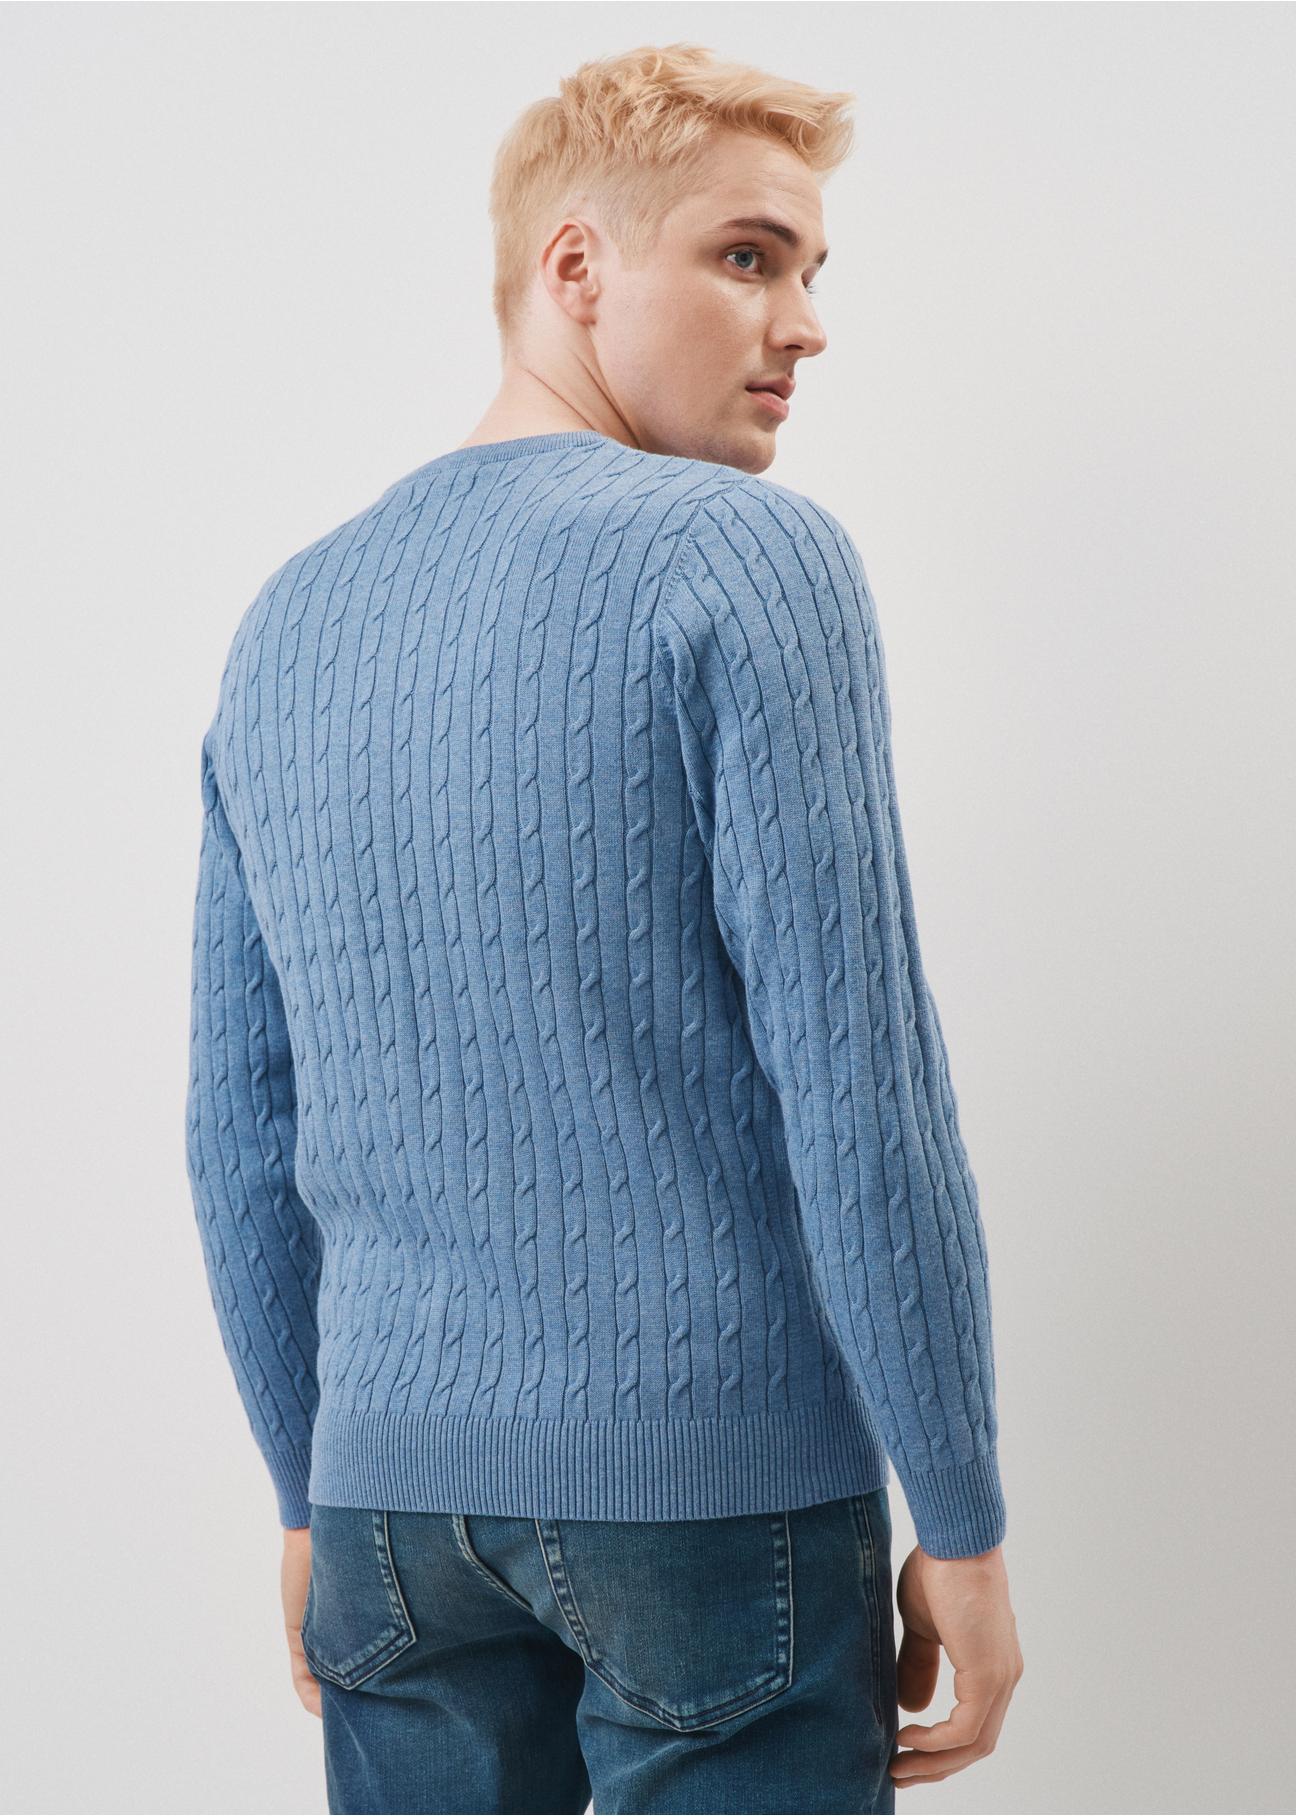 Bawełniany niebieski sweter męski SWEMT-0134-62(Z23)